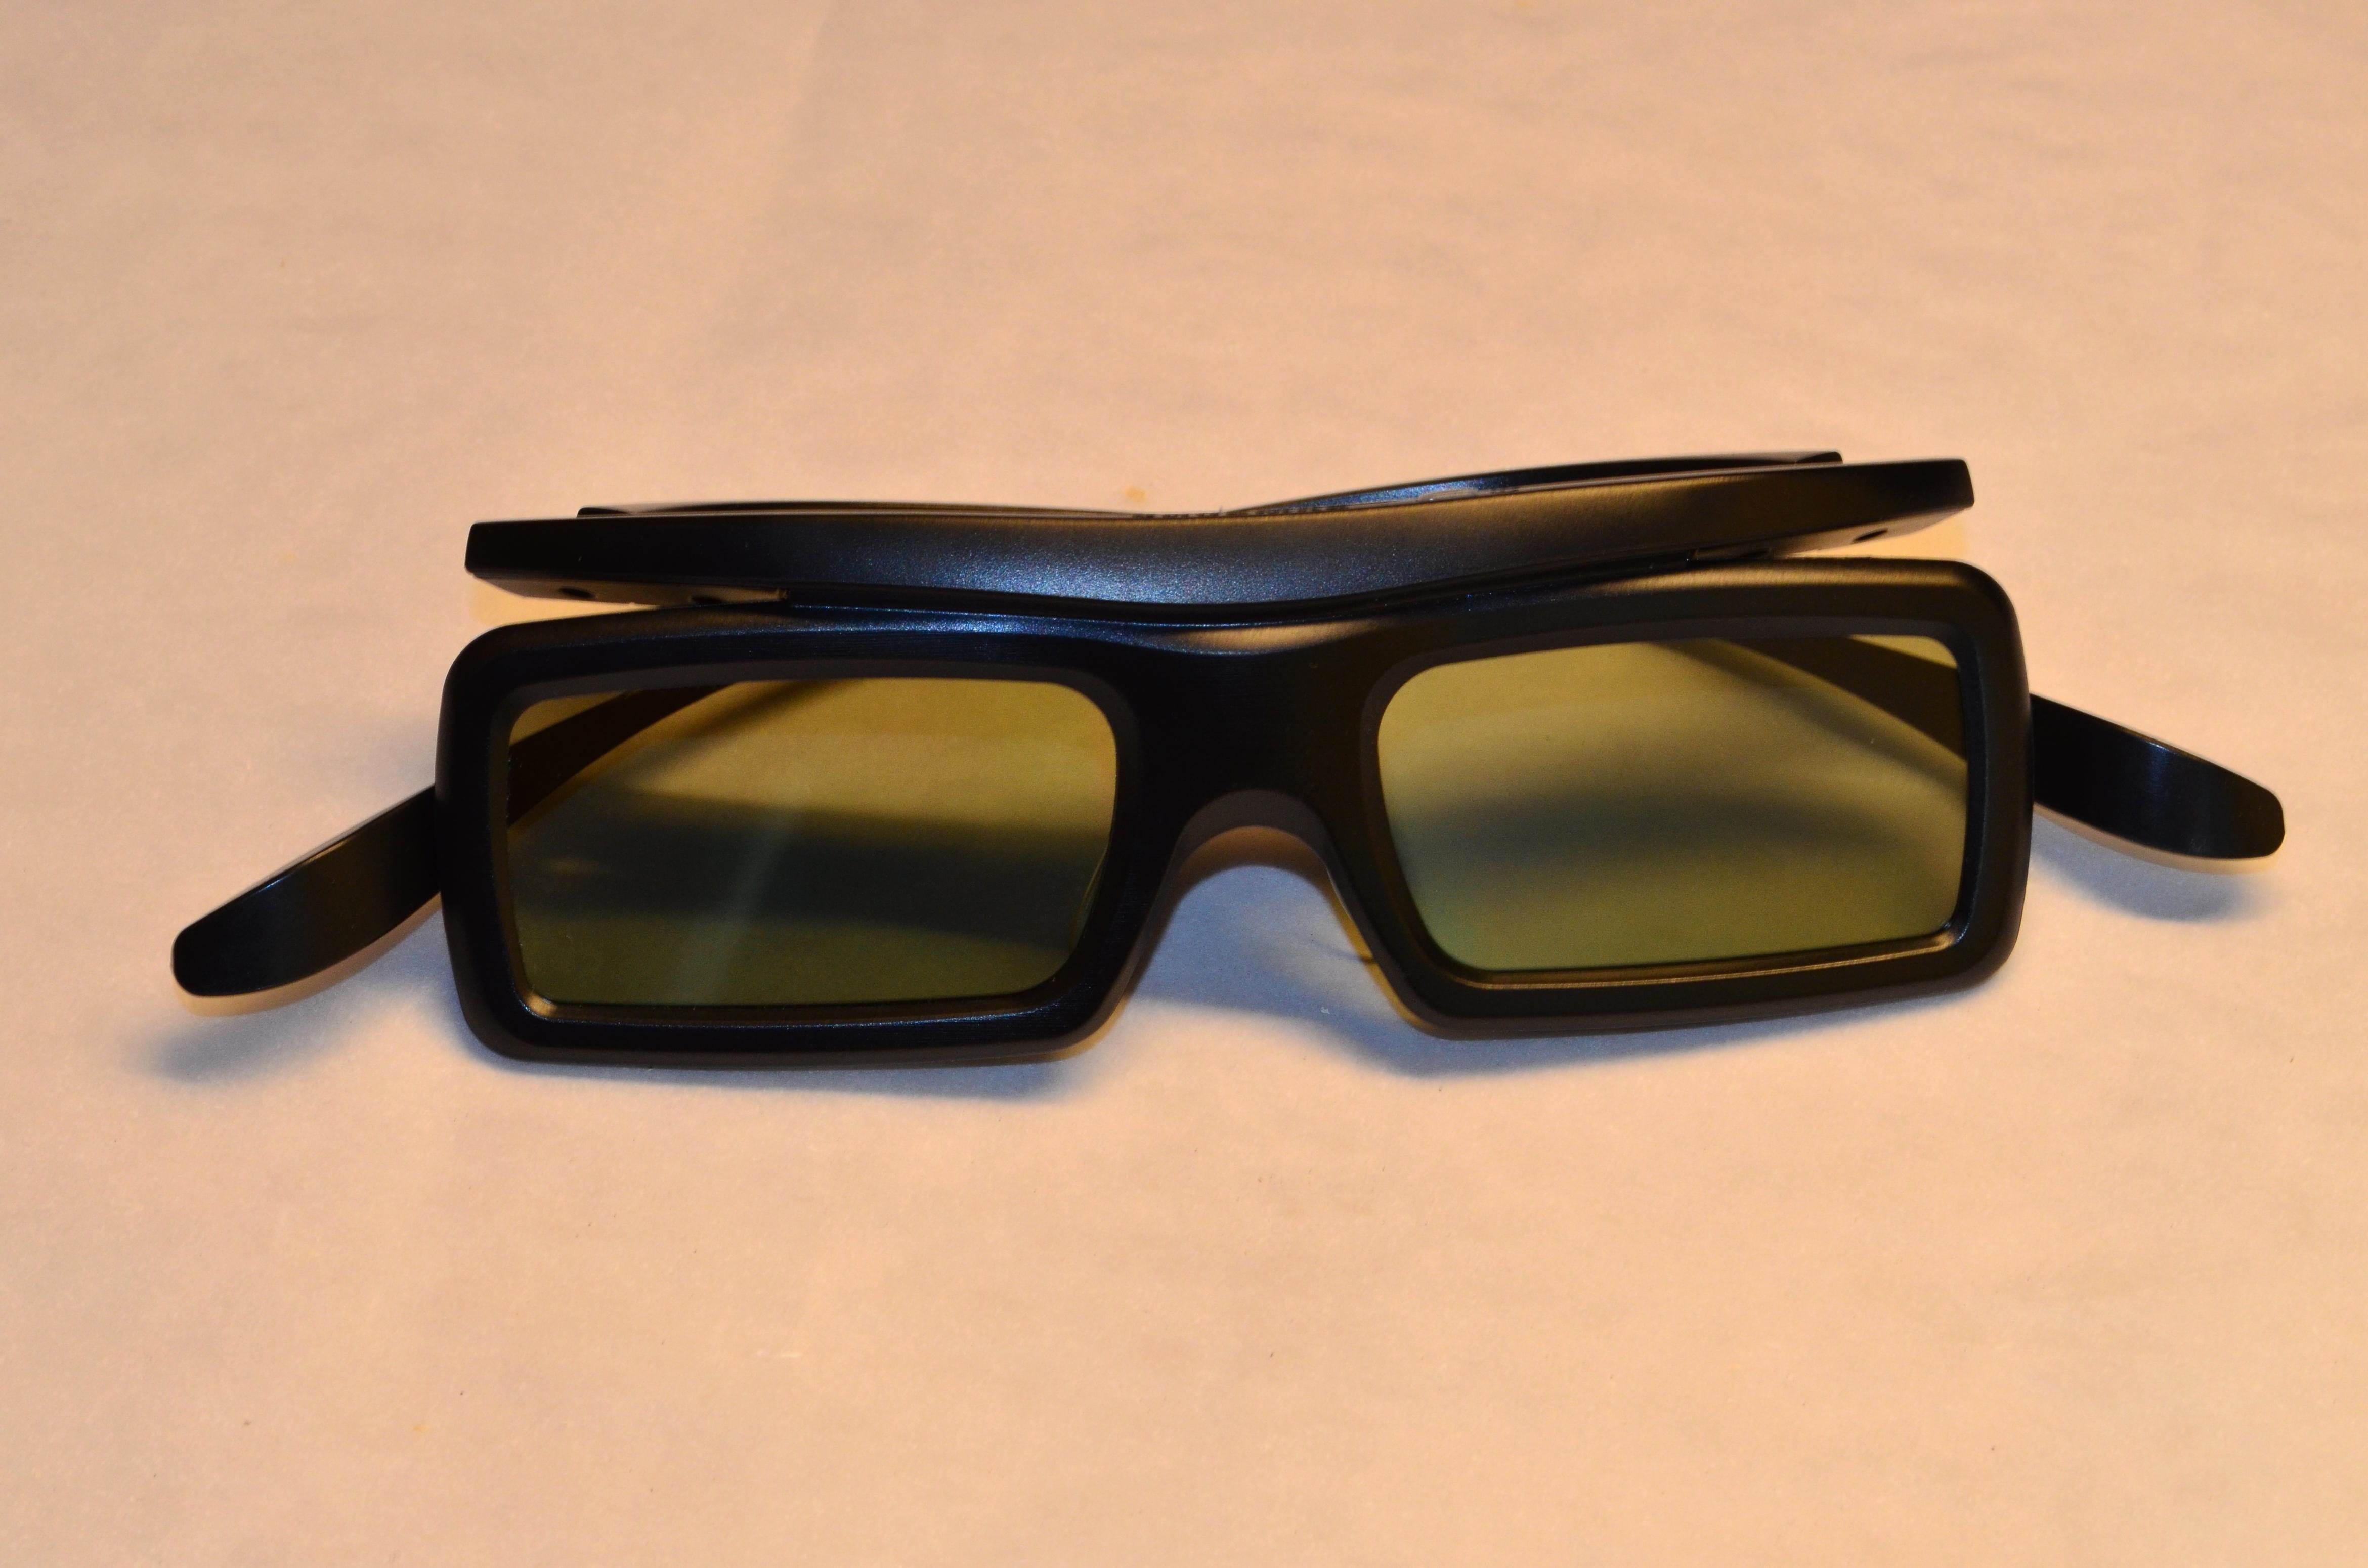 Пластиковые очки купить. Corrado ochelari очки 26028. Очки черные пластиковые. Темные очки пластмассовые. Master image 3d очки.